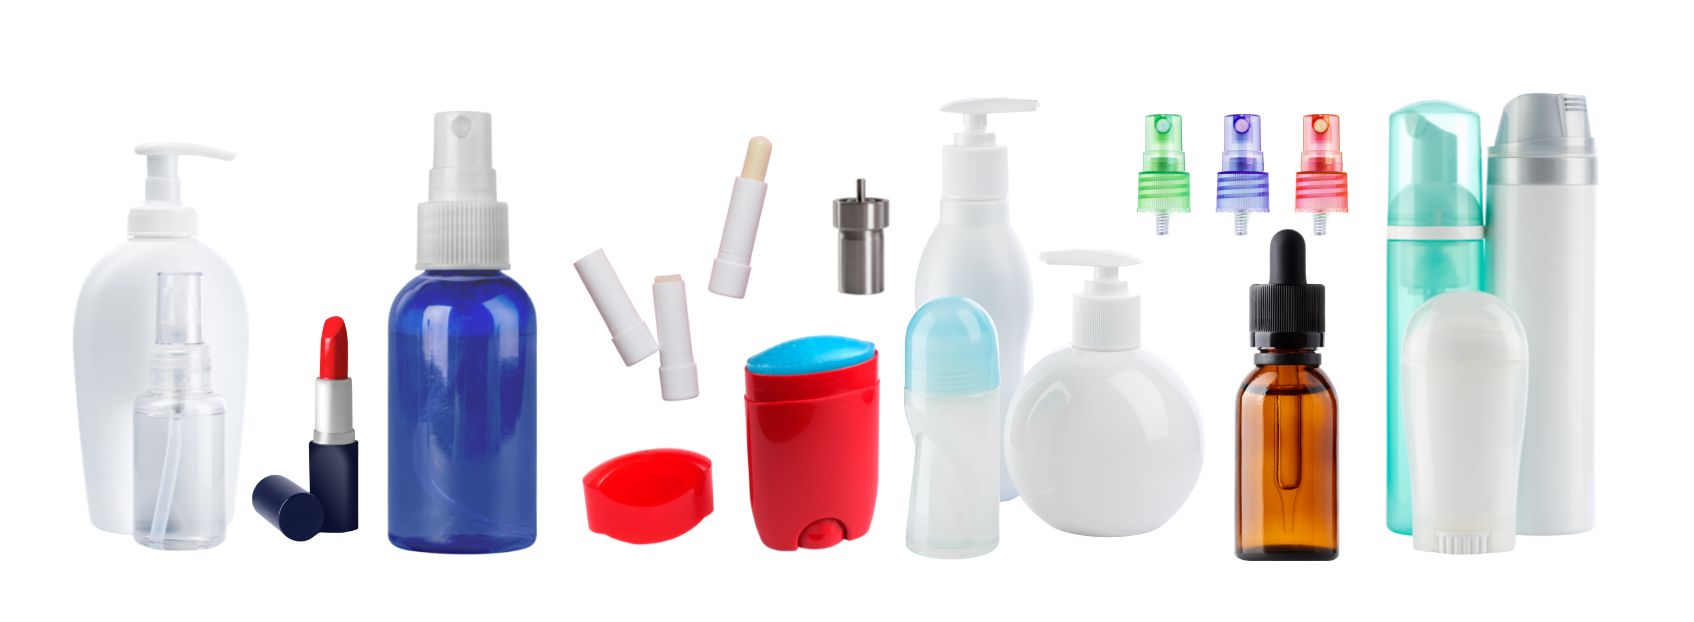 Kollage aus verschiedenen Verpackungen aus dem Kosmetik-Bereich: Lippenstifte, Deos, Tiegel etc.